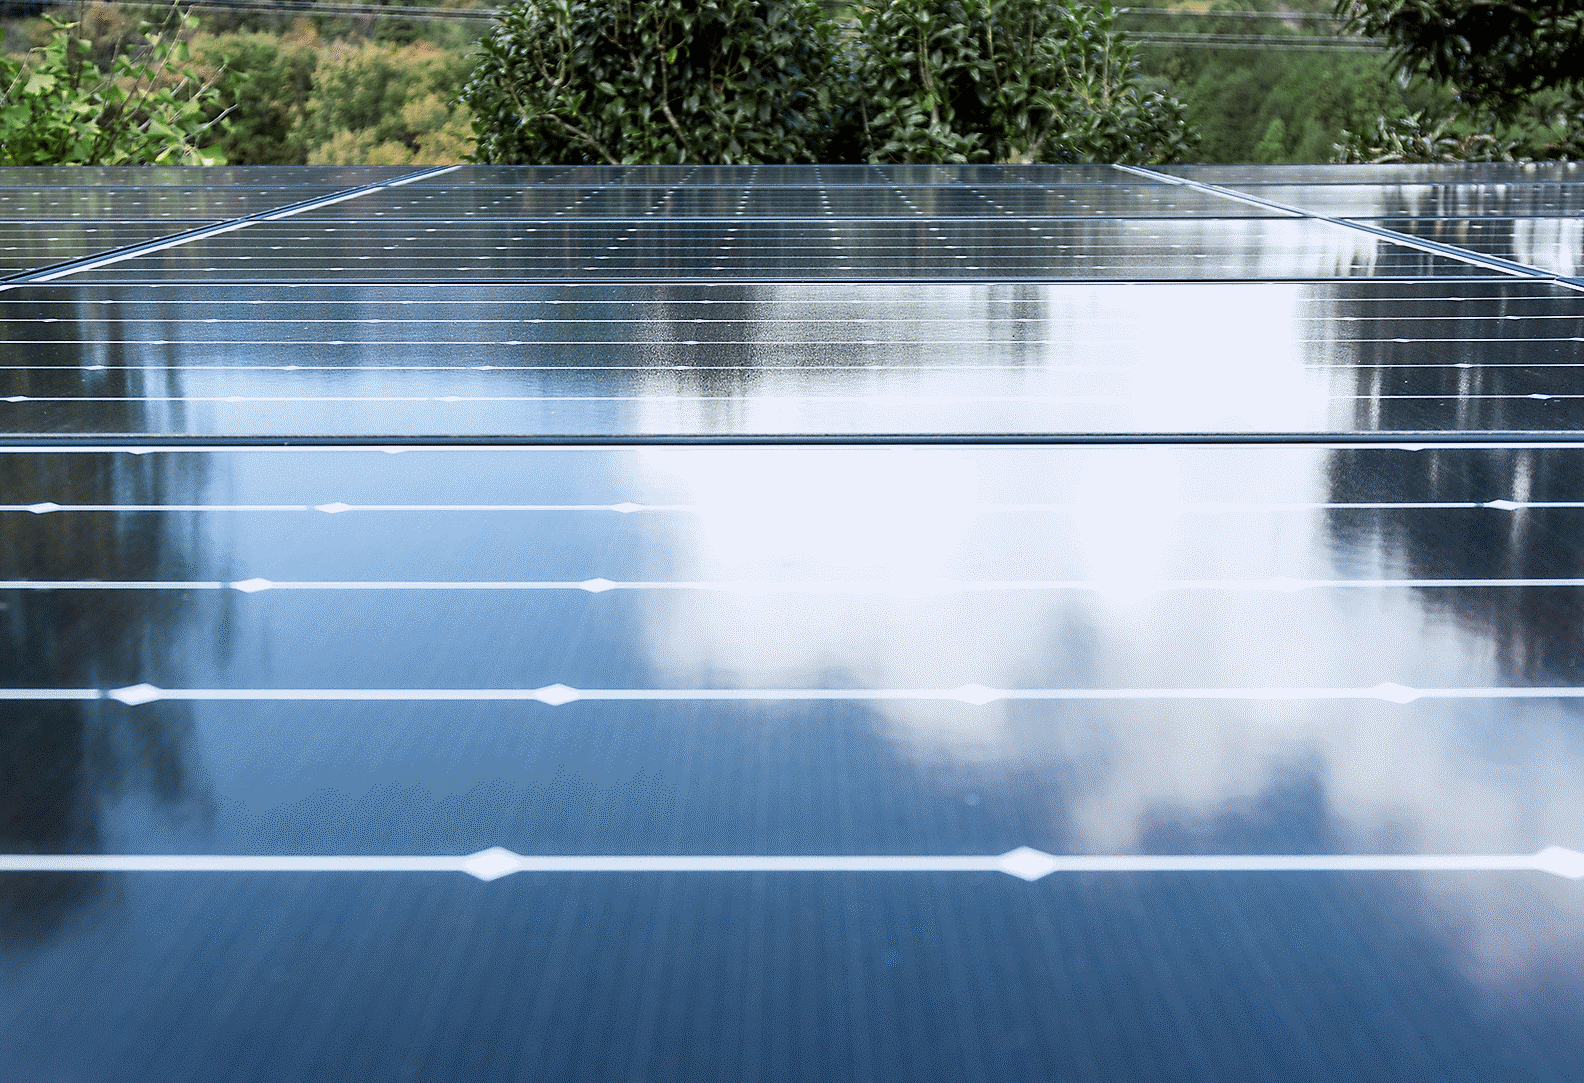 صورة فوتوغرافية تعرض سطح مصنع مغطى بألواح شمسية